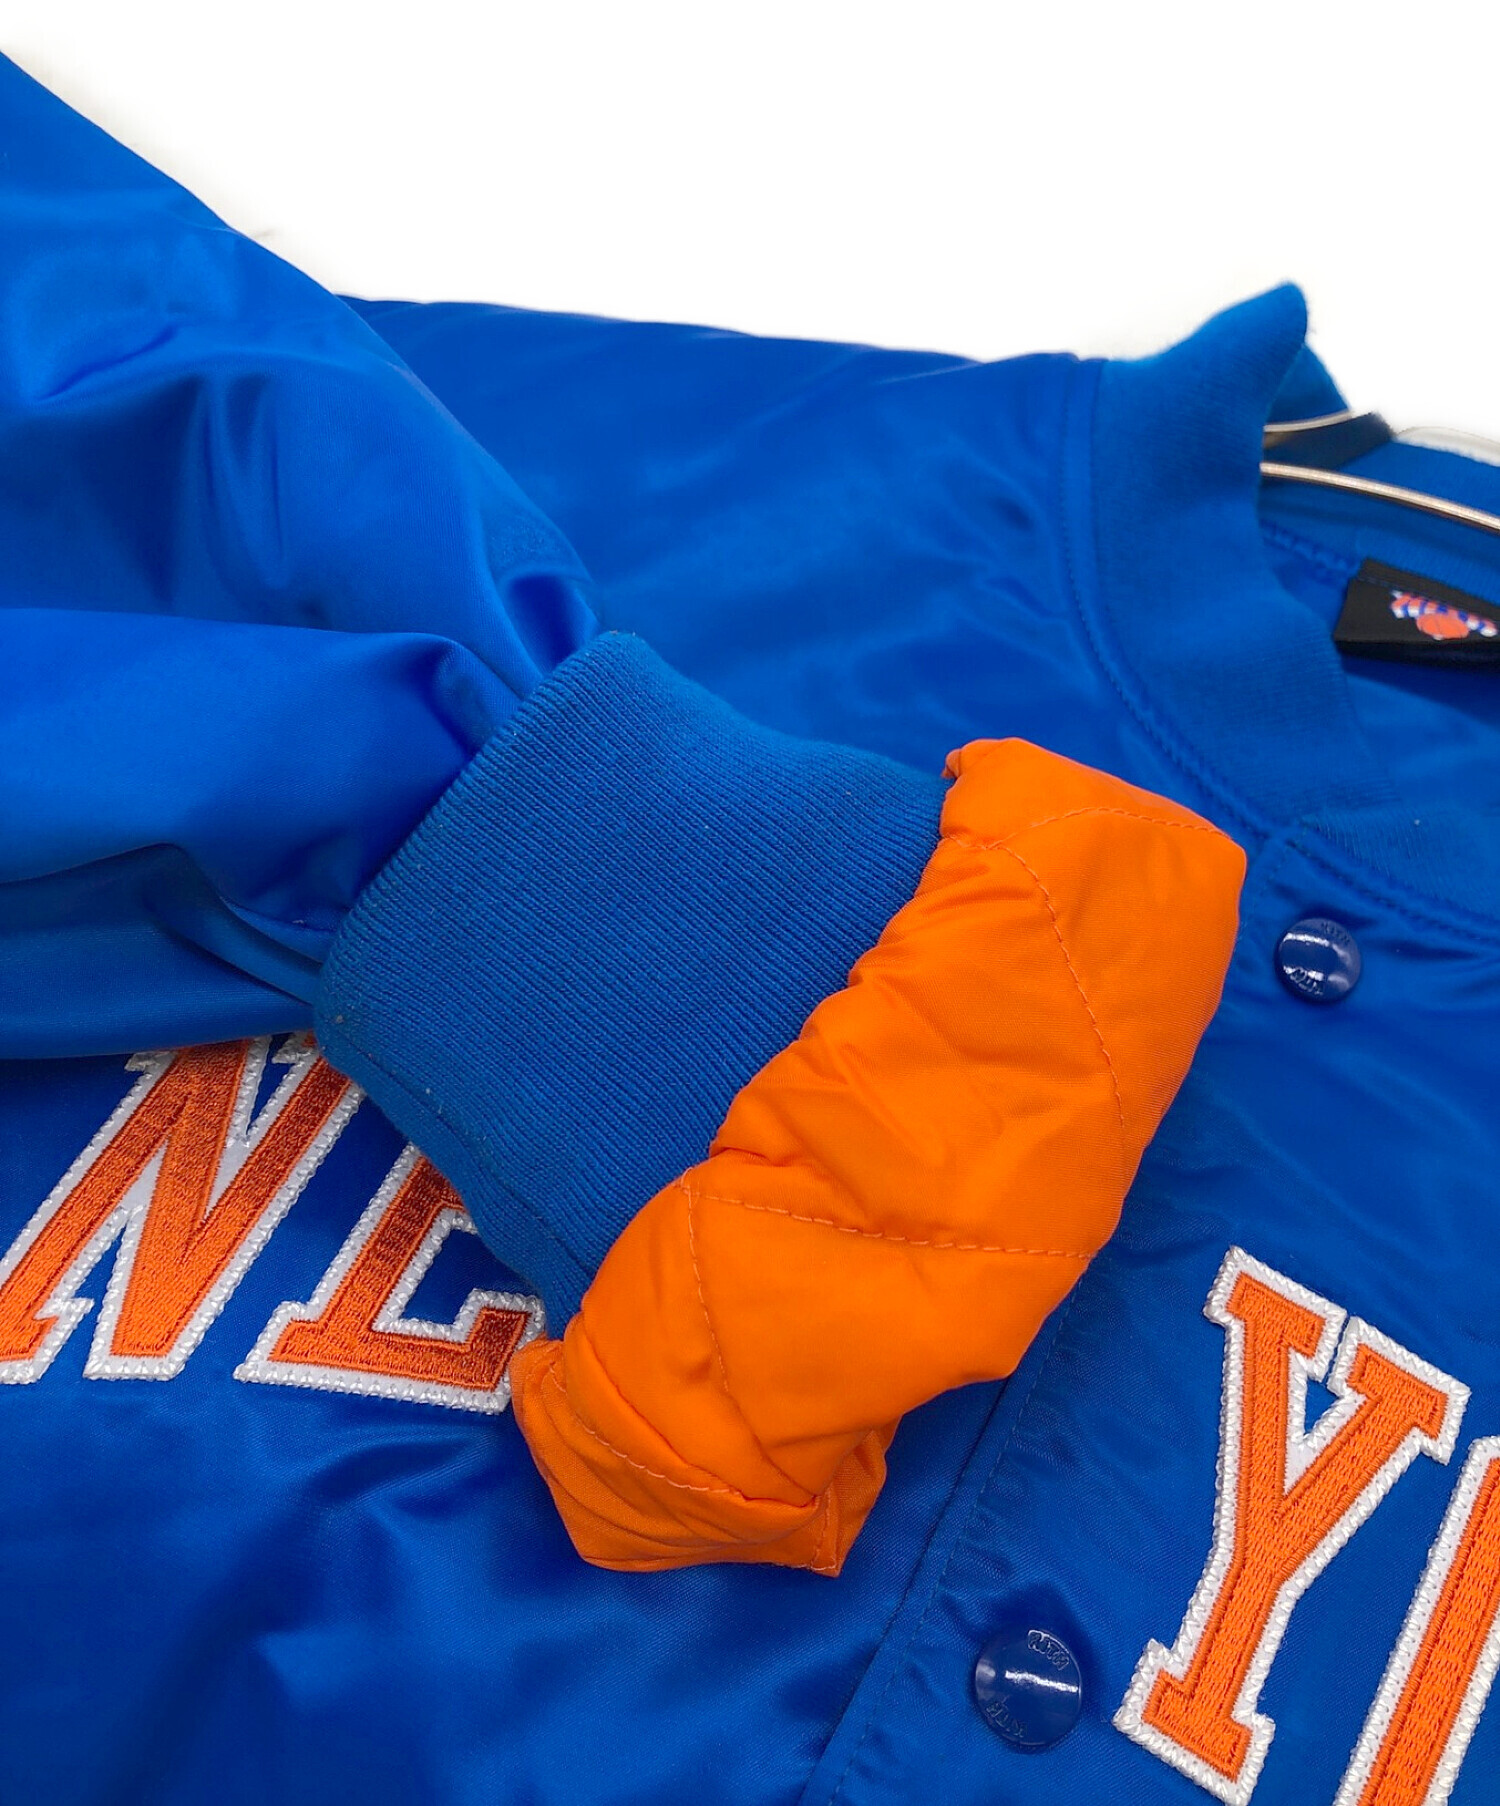 中古・古着通販】KITH (キス) New York Knicks Satin Bomber Jacket